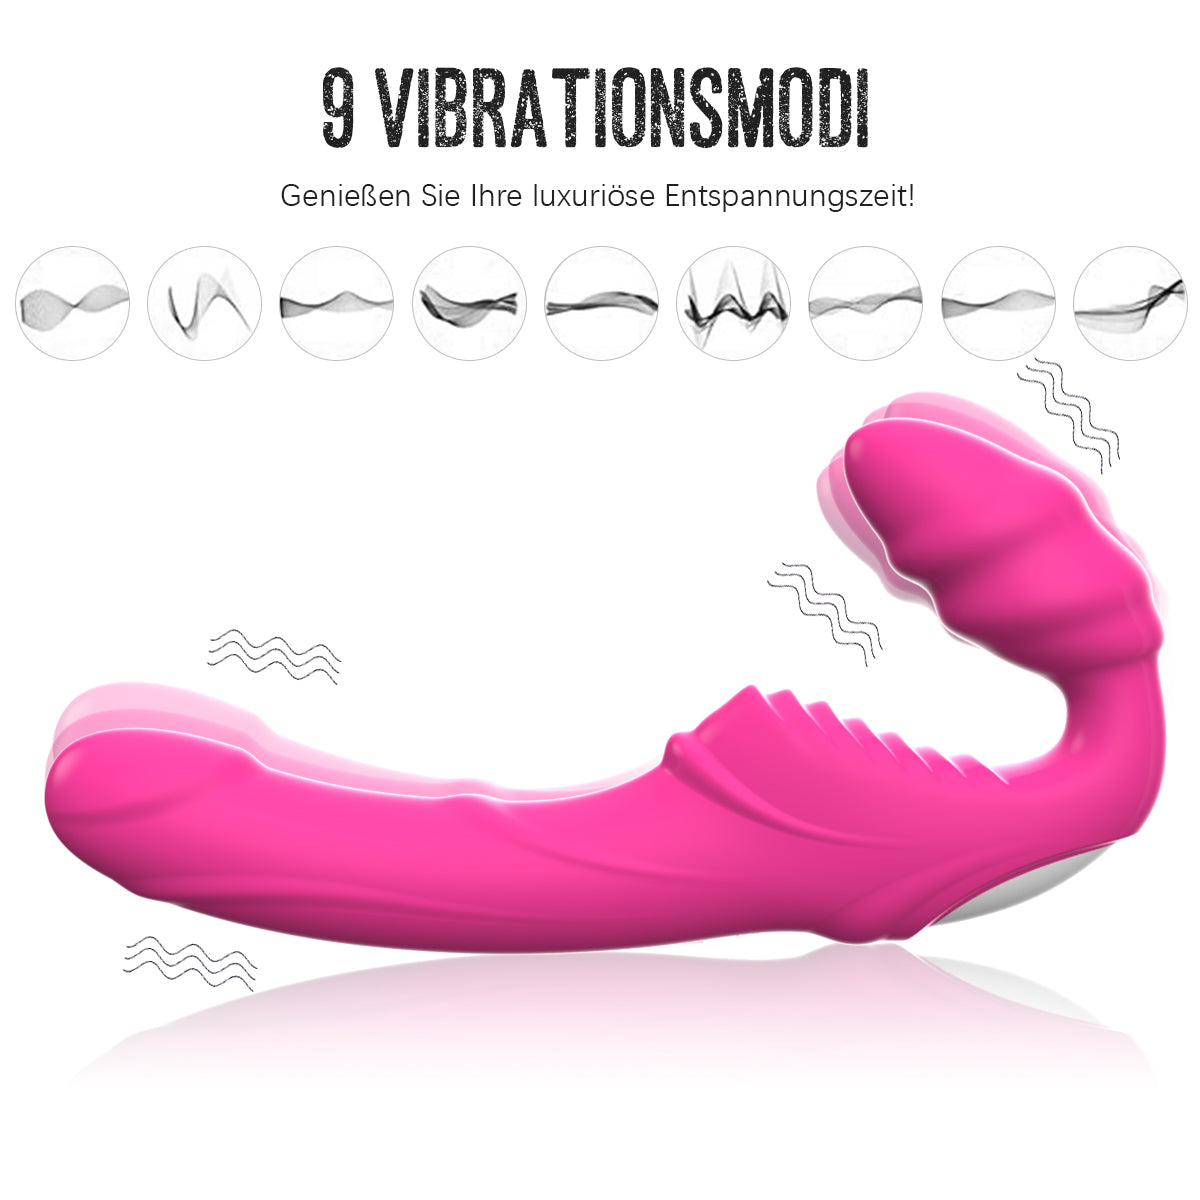 Vibromasseur clitoris et point G puissant avec vibrateur anal chauffant double moteur gode jouet sexuel jouet sexuel pour femmes couples 9 modes de vibration silencieux 